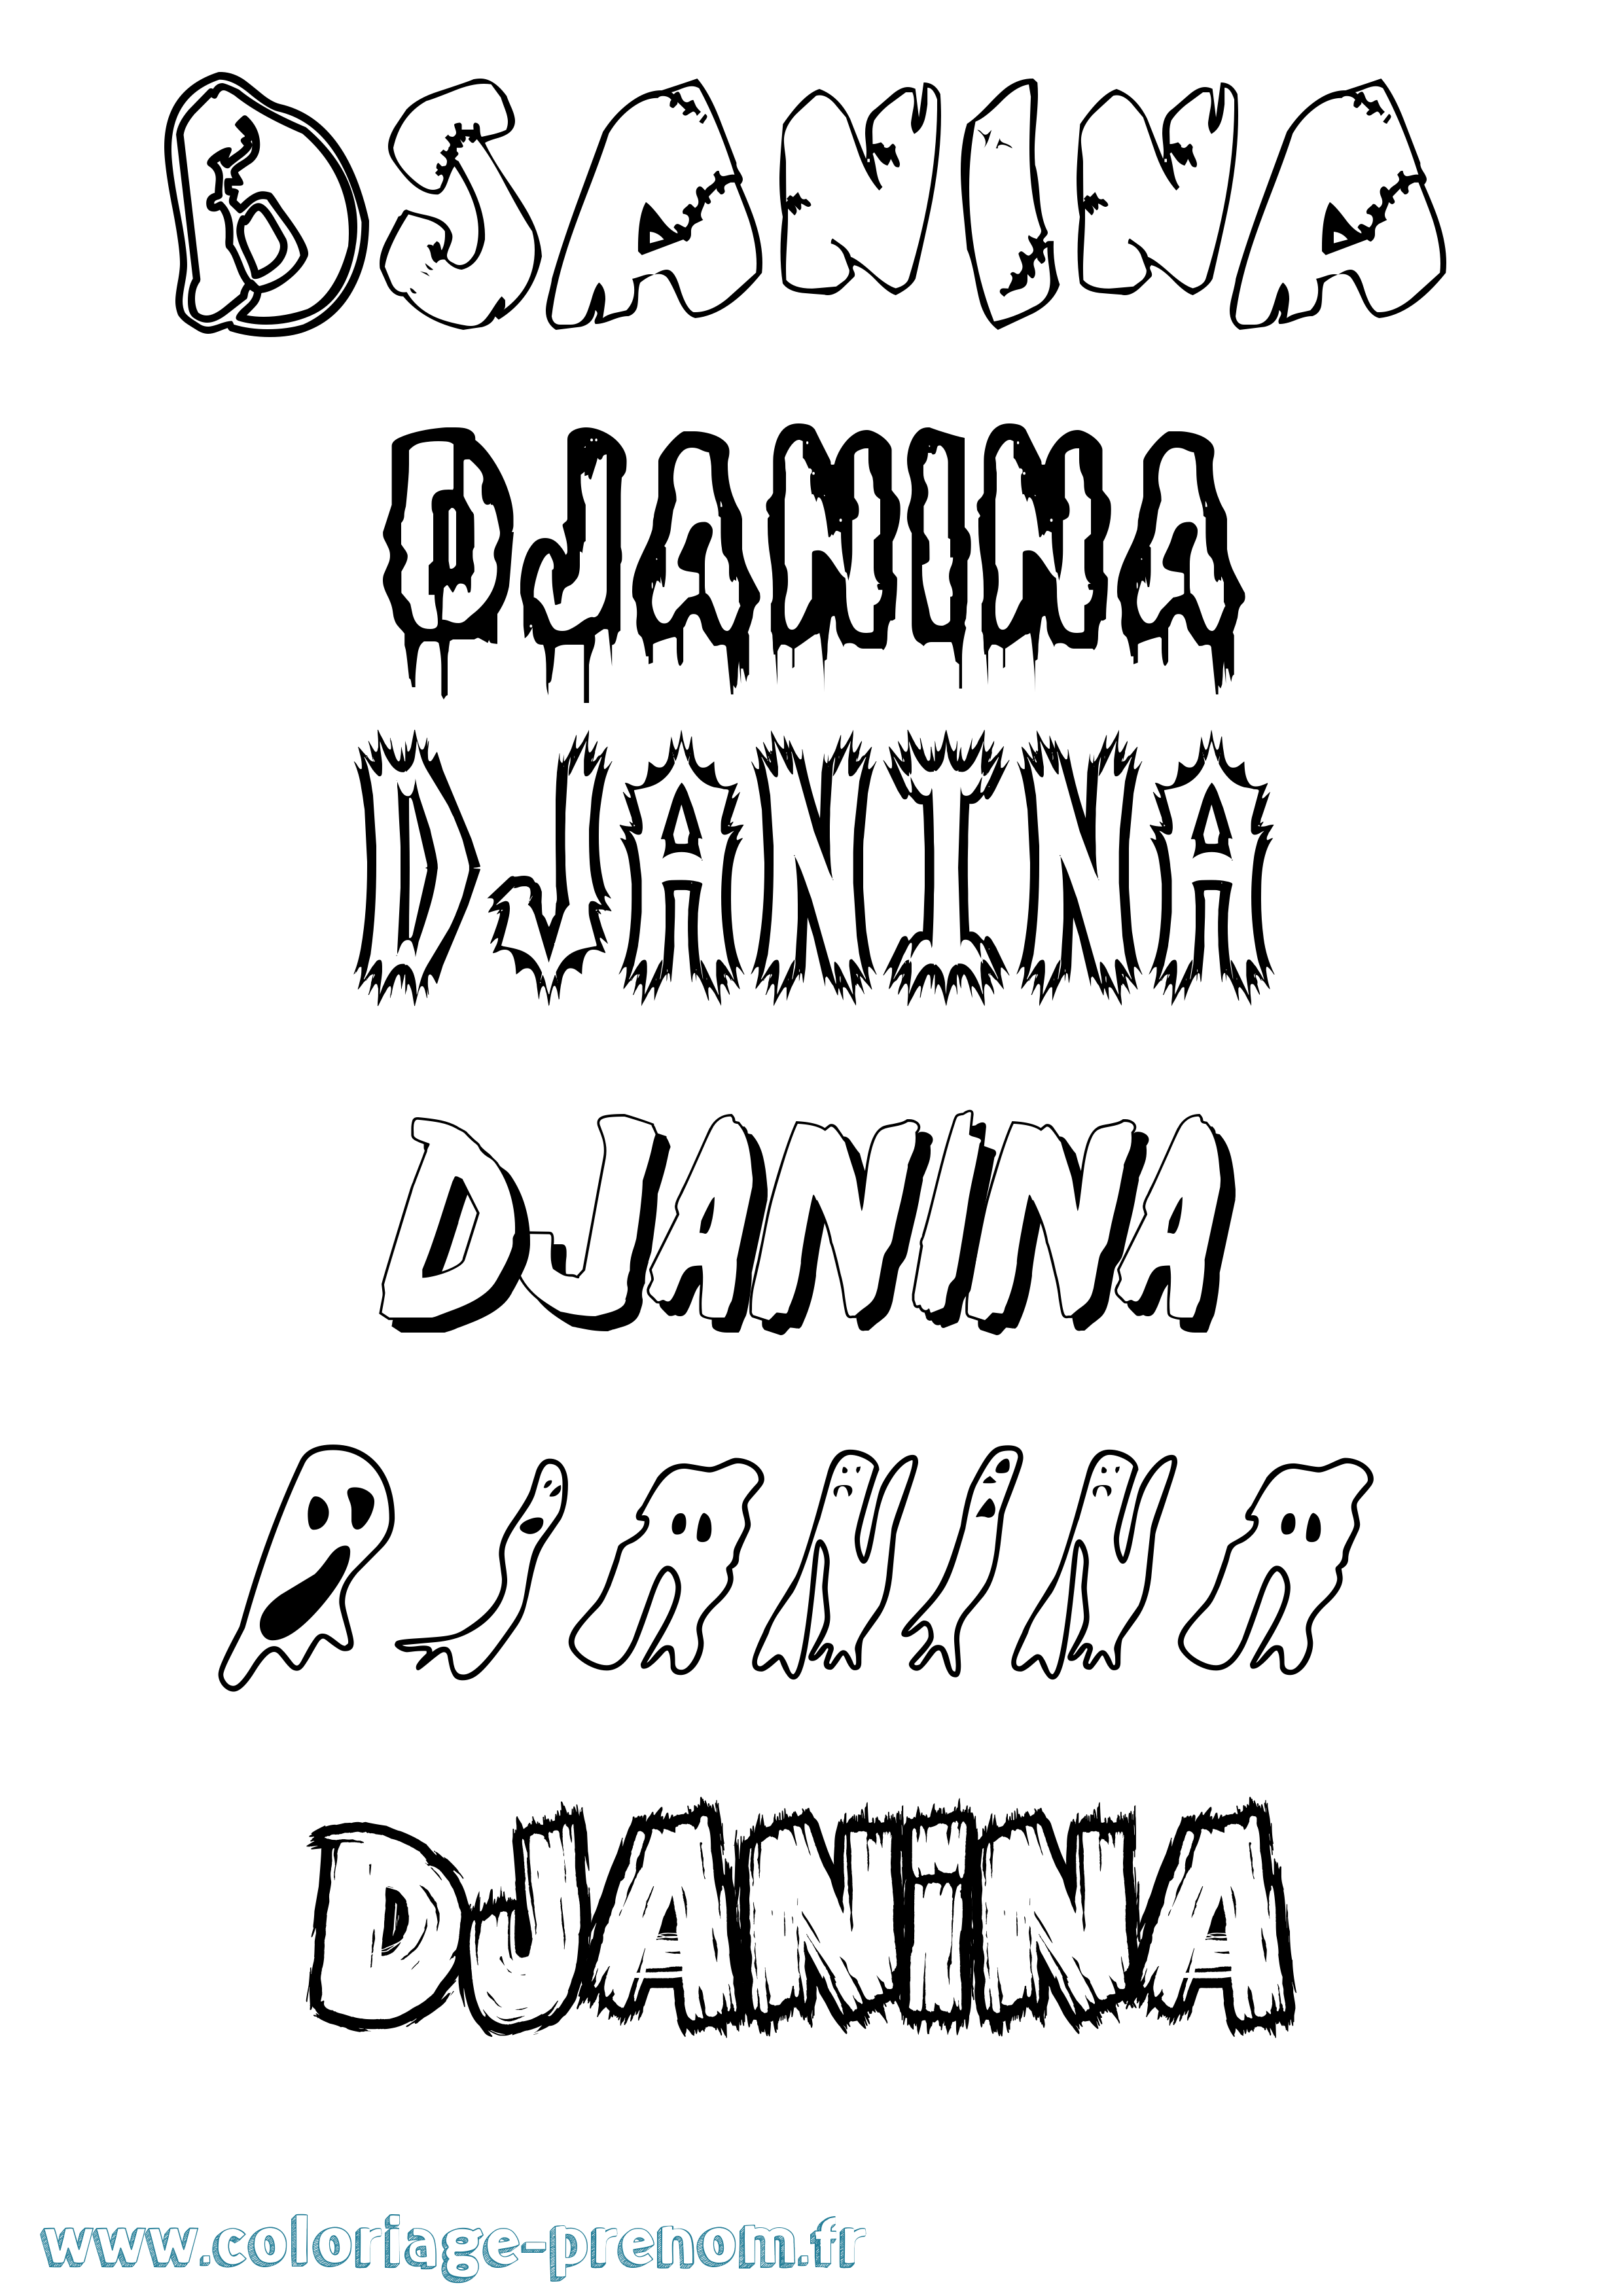 Coloriage prénom Djanina Frisson